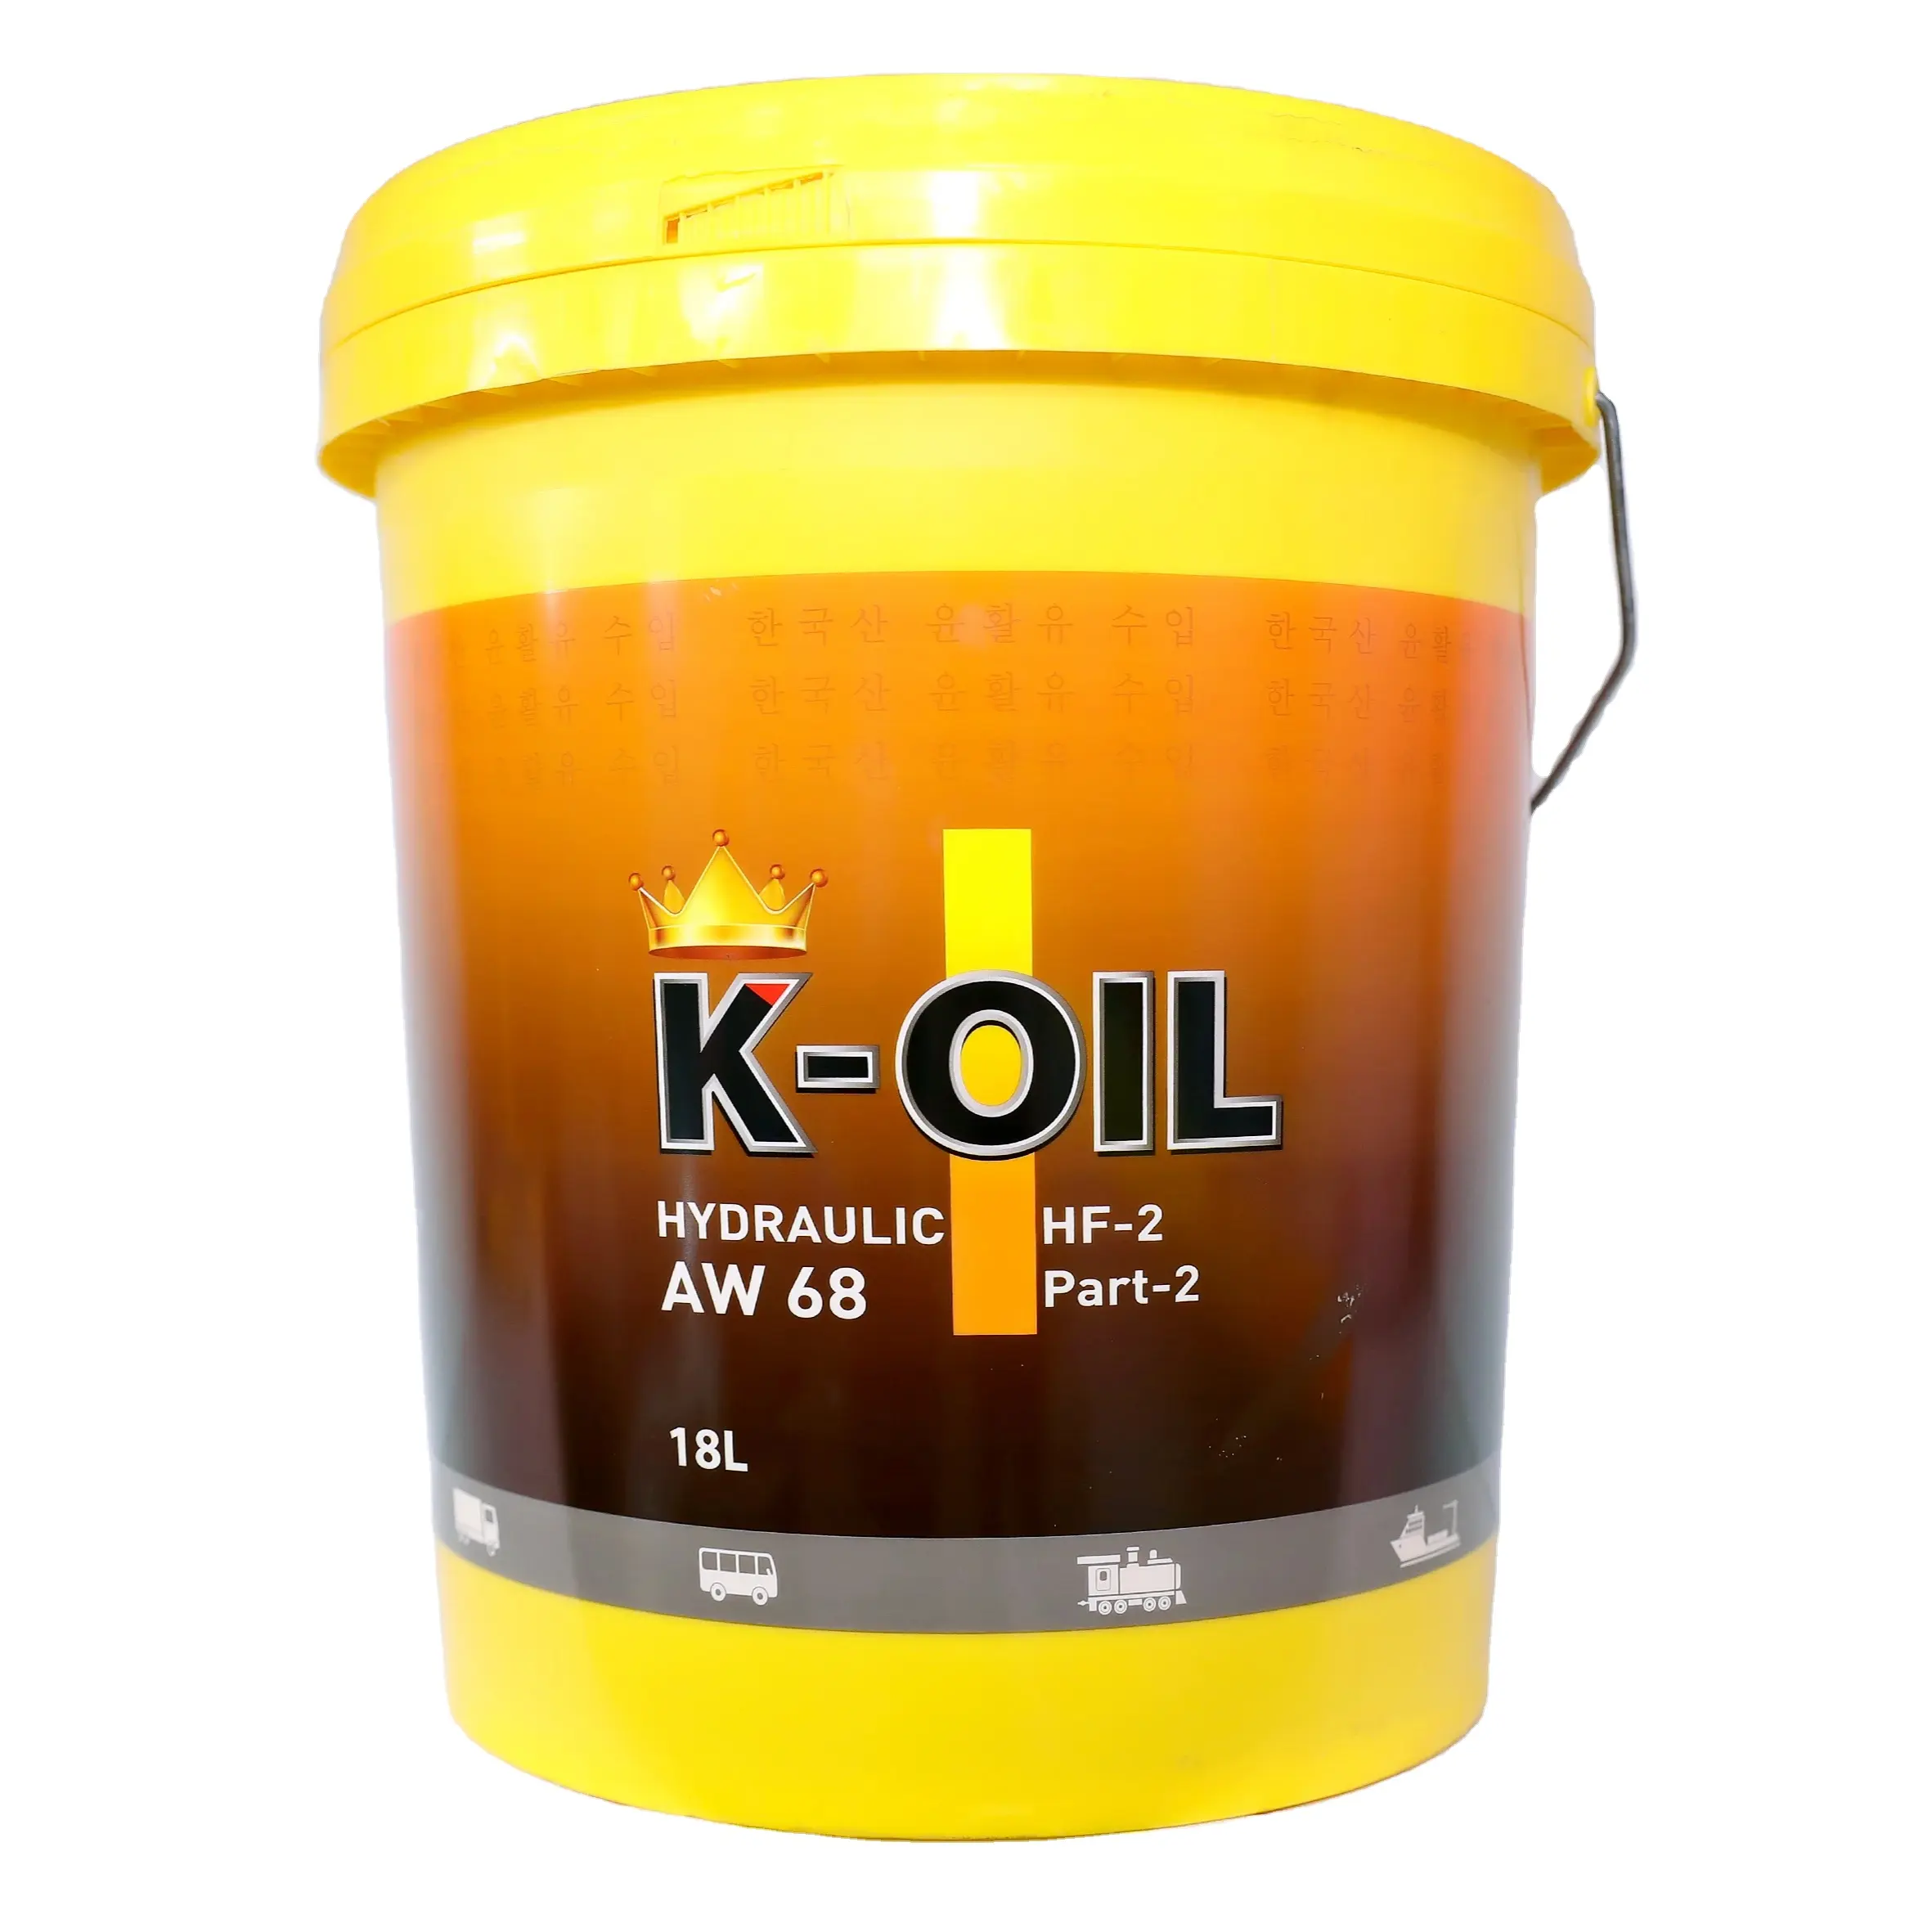 K-oil hidráulico AW68 aceite hidráulico y precio de fábrica lubricante de alto estándar y bajo precio para trenes, barcos fabricados en Vietnam